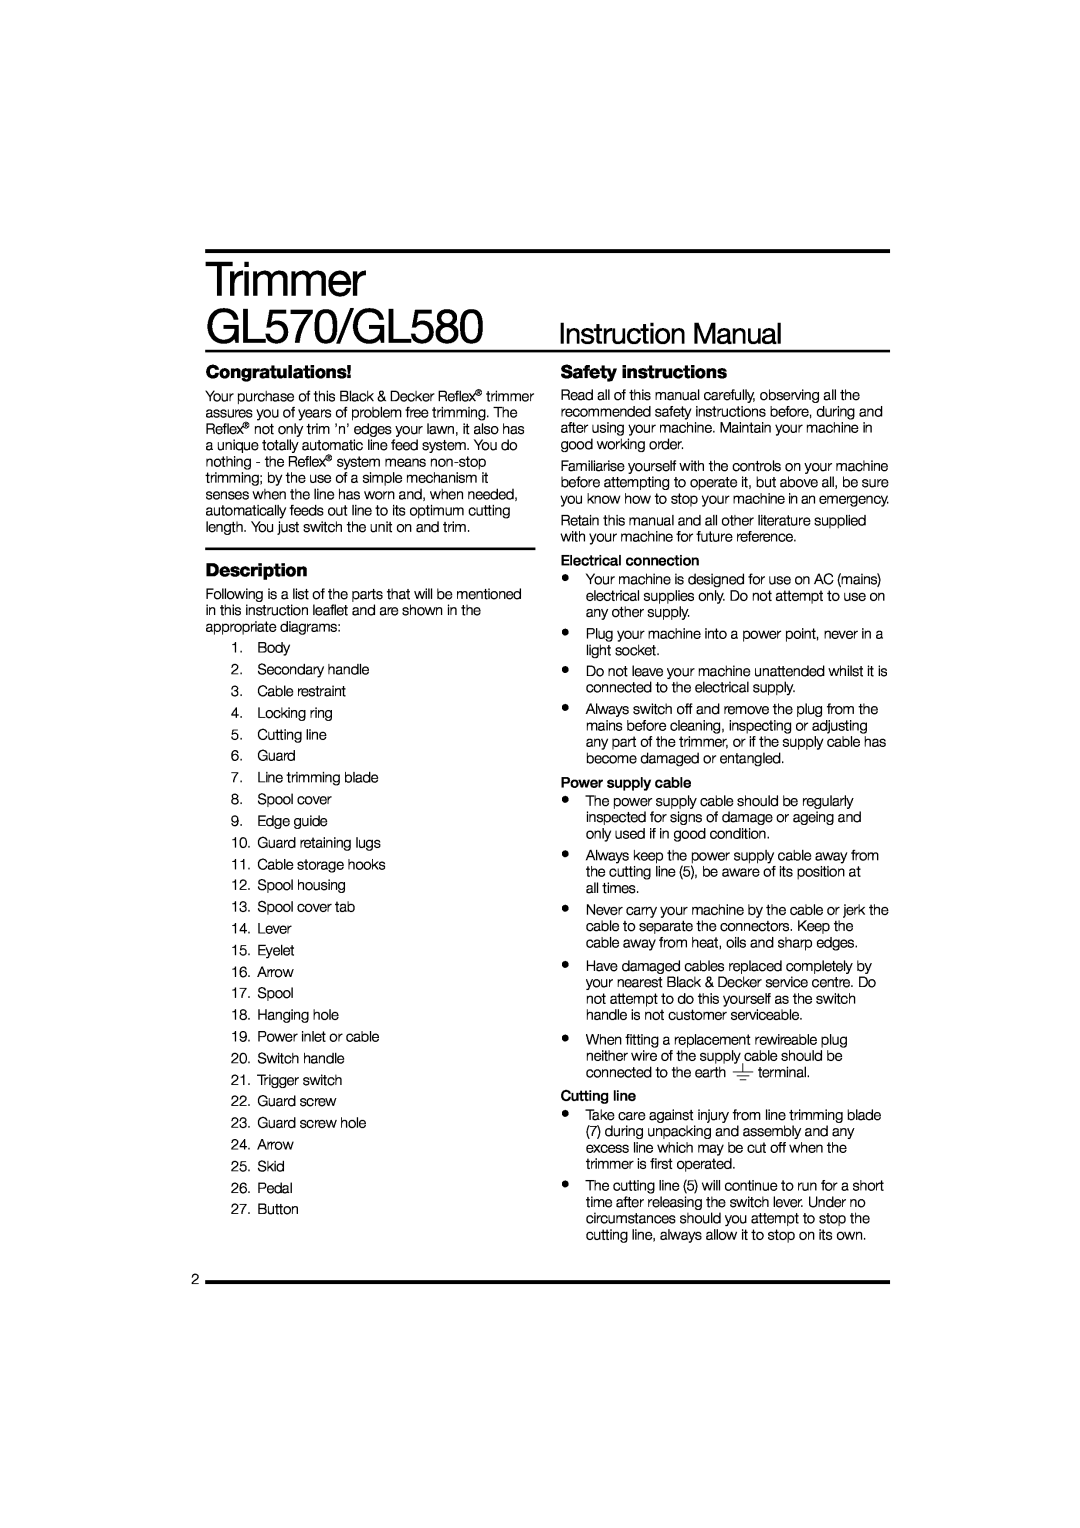 Black & Decker instruction manual Trimmer, GL570/GL580 Instruction Manual, Congratulations, Description 